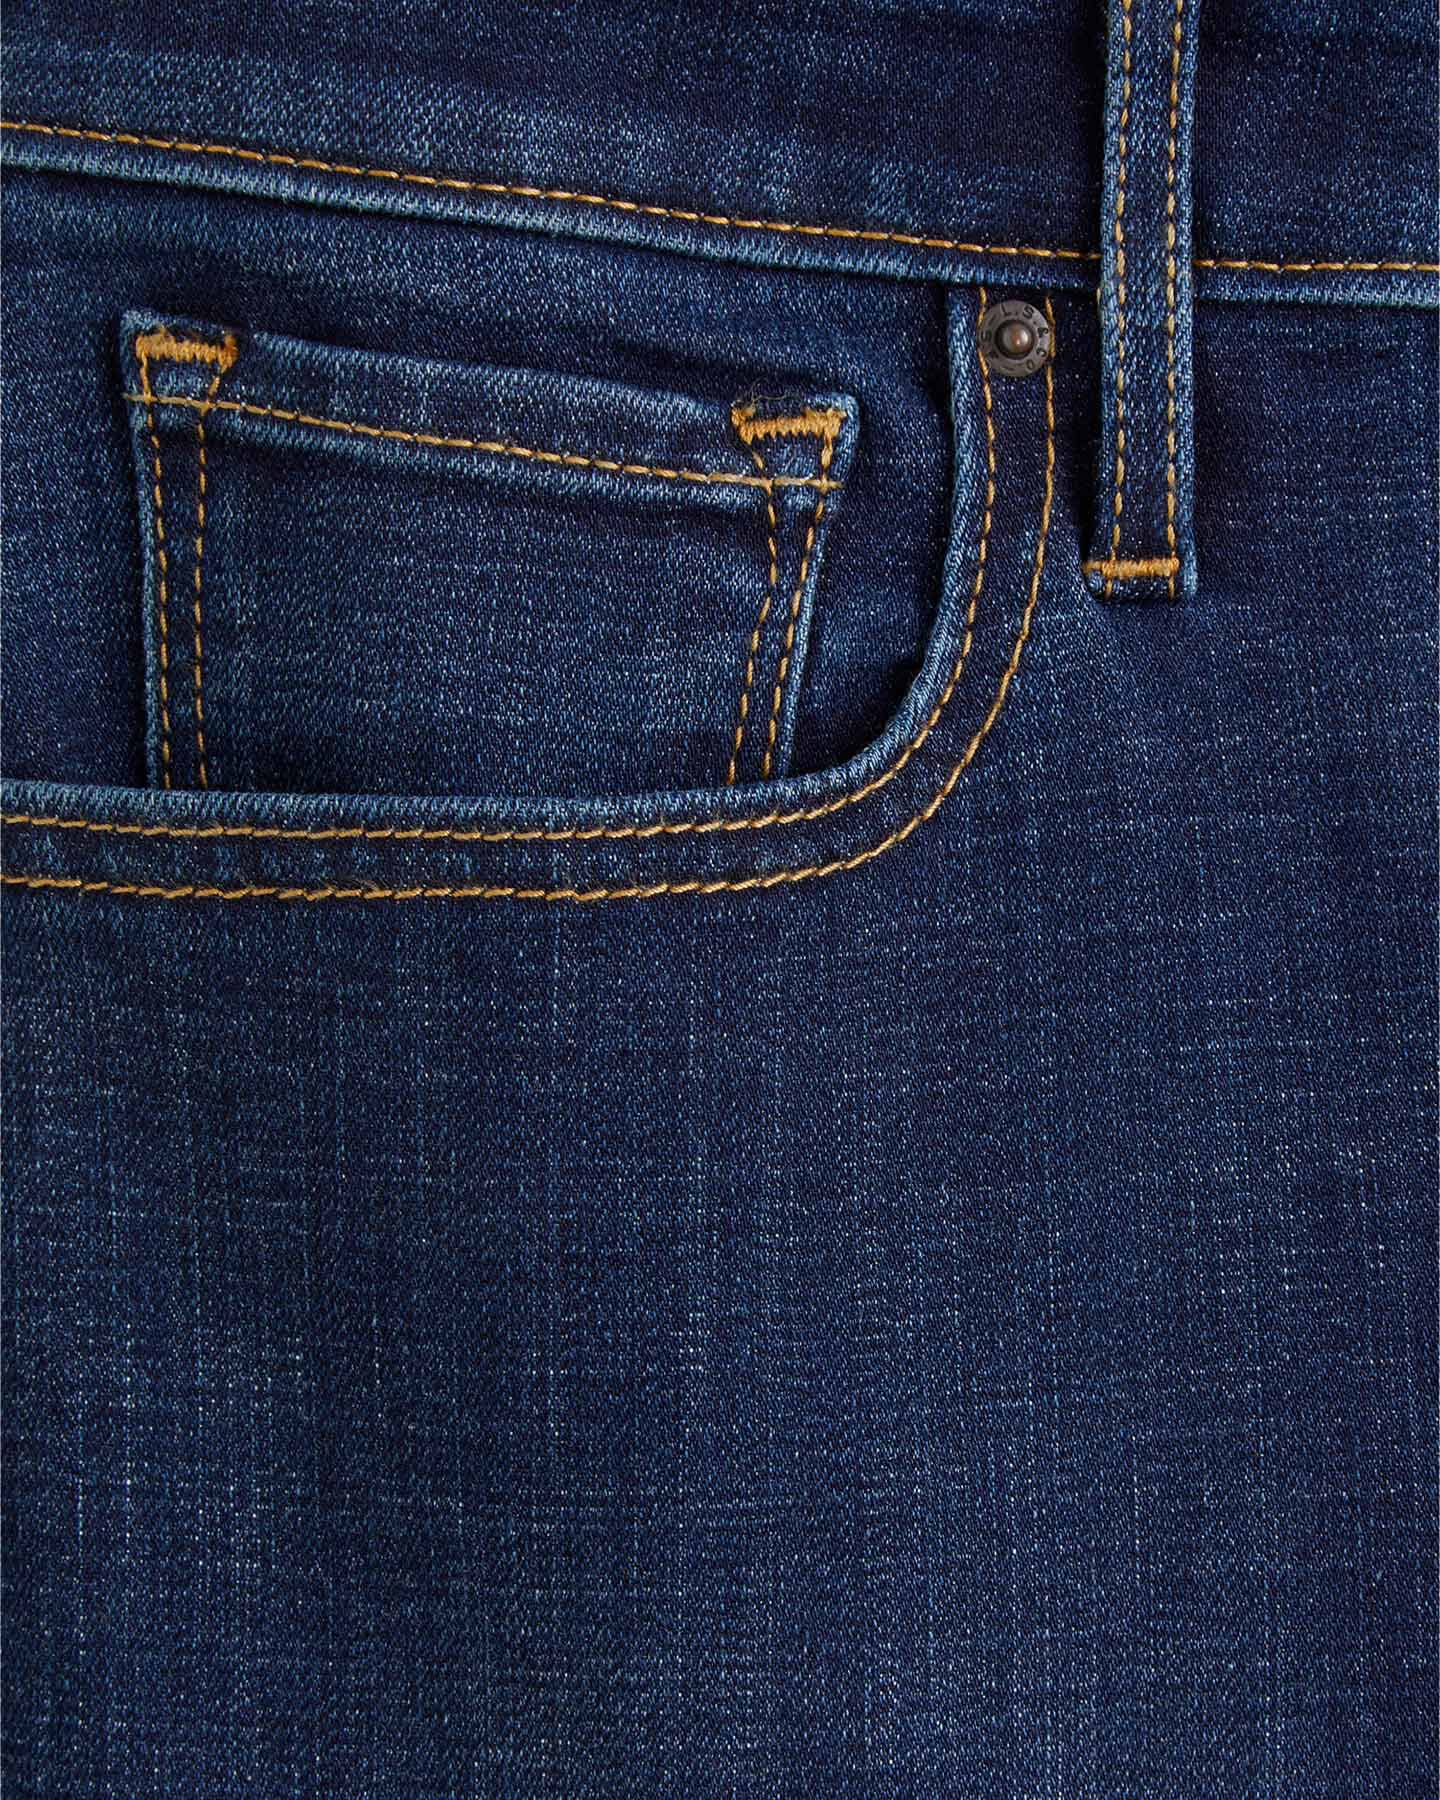  Jeans LEVI'S 721 HIGH RISE SUPER SKINNY L30 DENIM W S4104864|0047|26 scatto 3